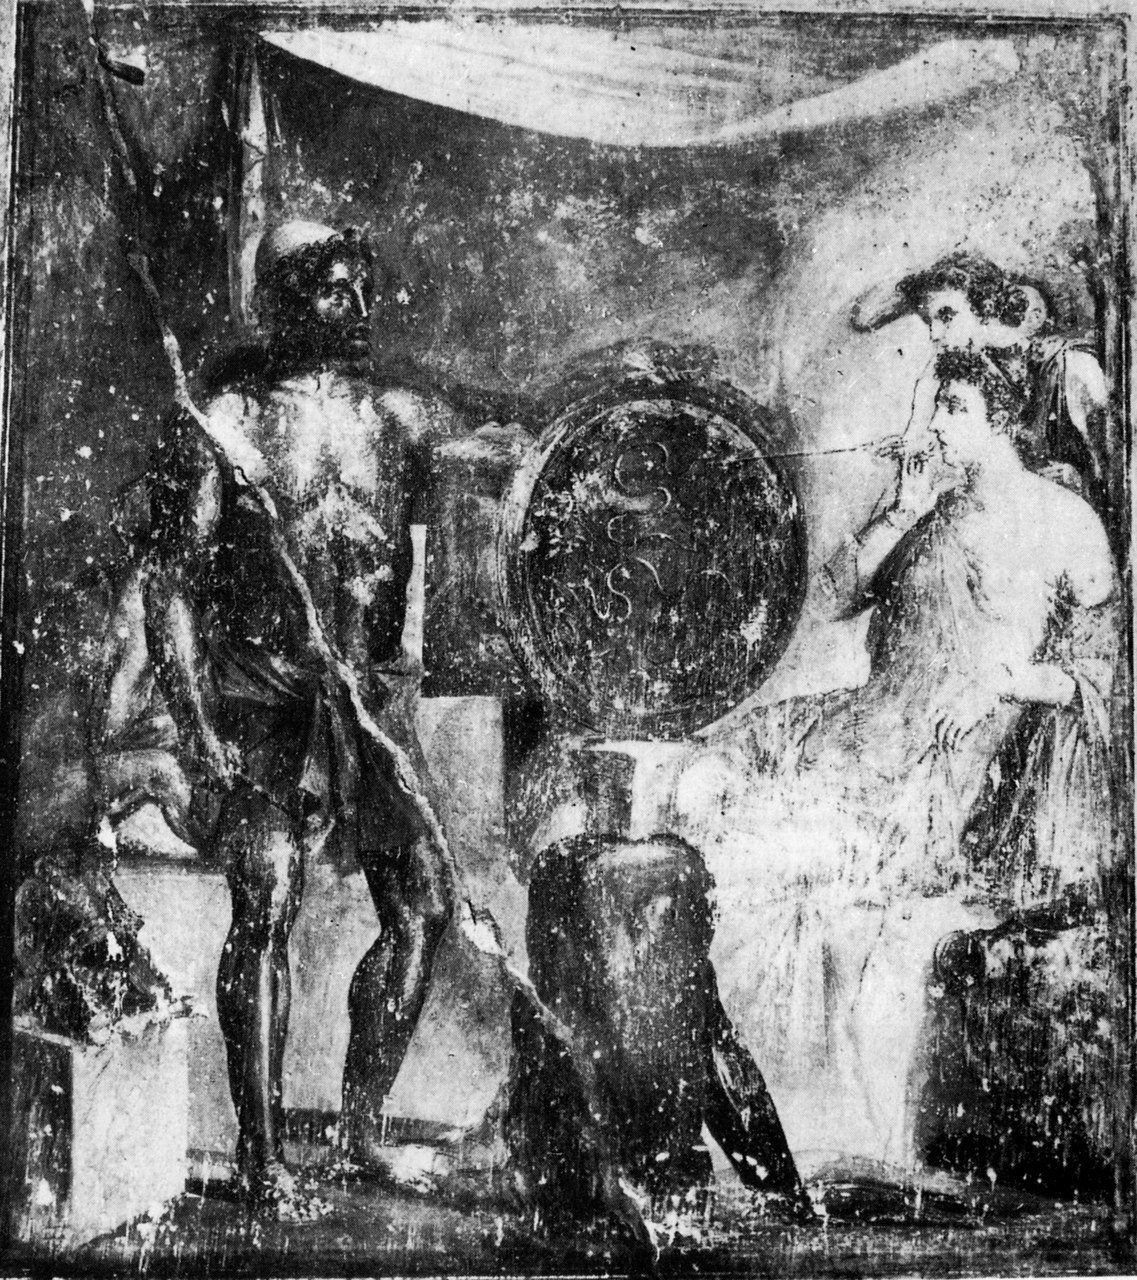  Wall painting from the Domus Uboni (Pompeii IX.5.2), first century AD first century AD. (Reproduced by kind permission of the Institut für Klassische Archäologie und Museum für Abgüsse Klassischer Bildwerke, Ludwig-Maximilians-Universität, Munich)